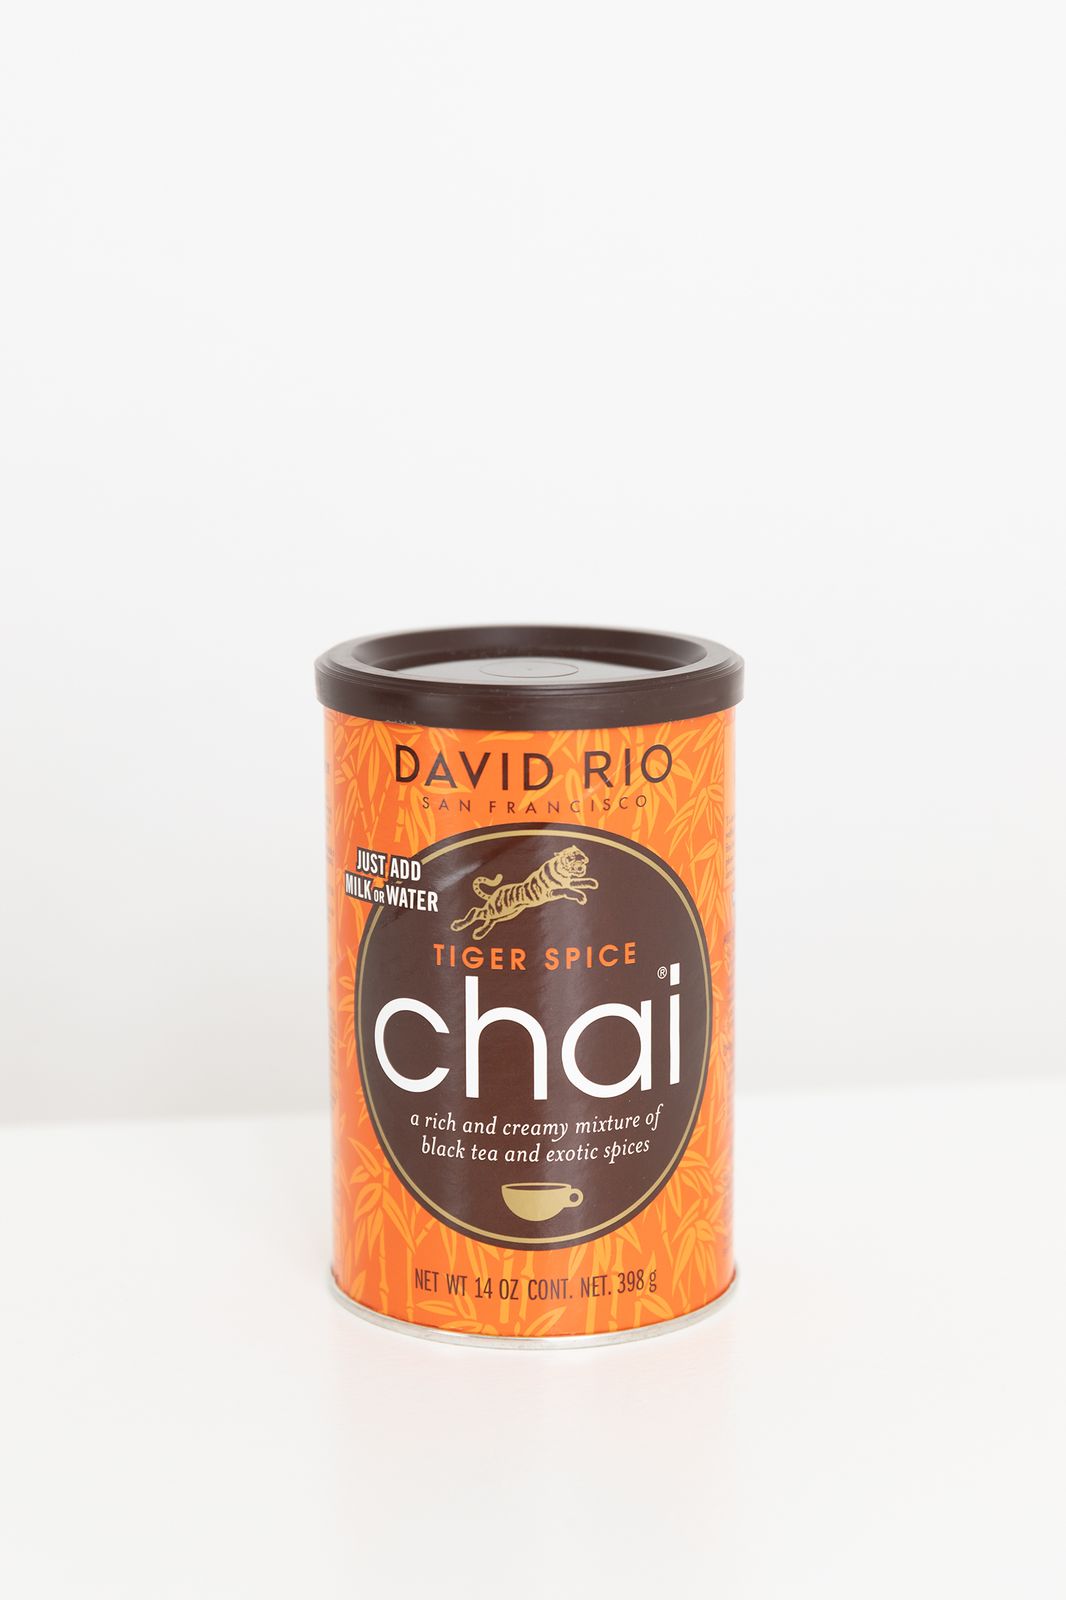 David Rio Chai Latte Tiger Spice